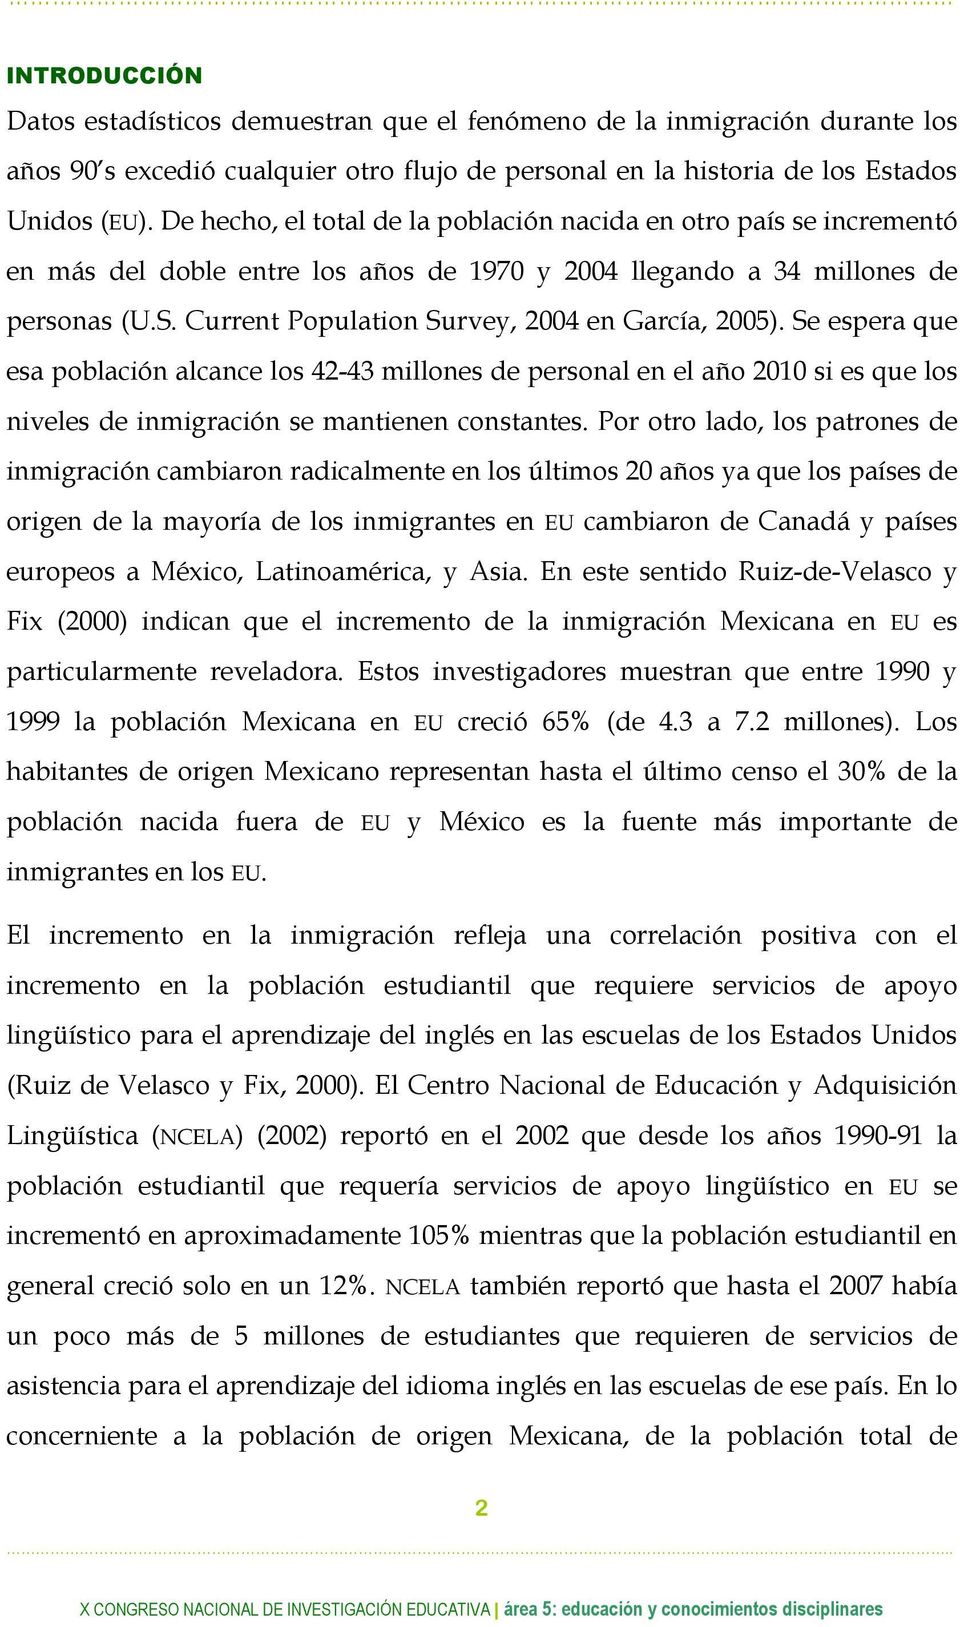 Current Population Survey, 2004 en García, 2005). Se espera que esa población alcance los 42-43 millones de personal en el año 2010 si es que los niveles de inmigración se mantienen constantes.